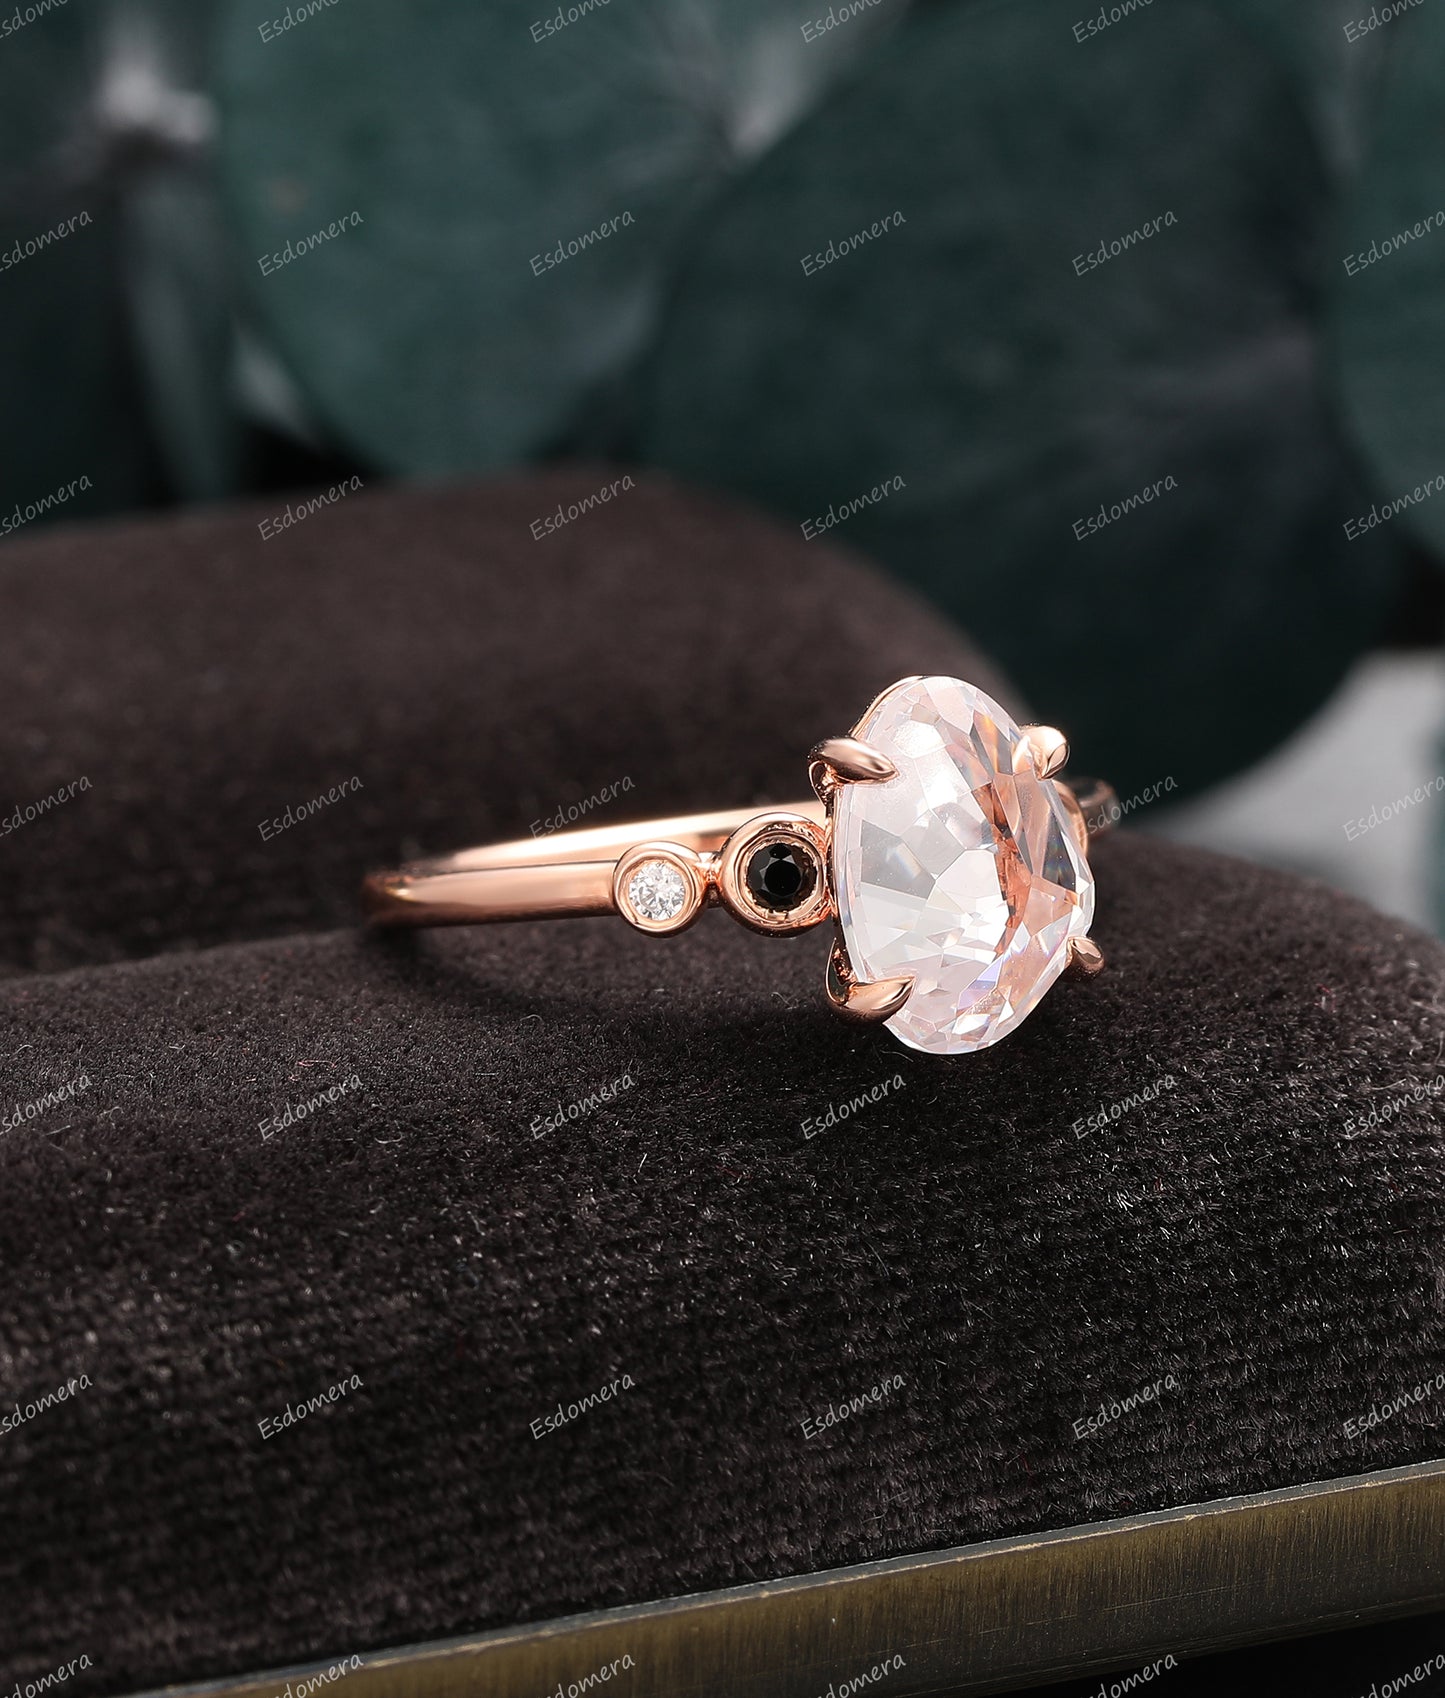 4 Prong Set Irregular Cut Moissanite Engagement Ring, 14k Rose Gold Ring For Women, Classic Moissanite Anniversary Ring